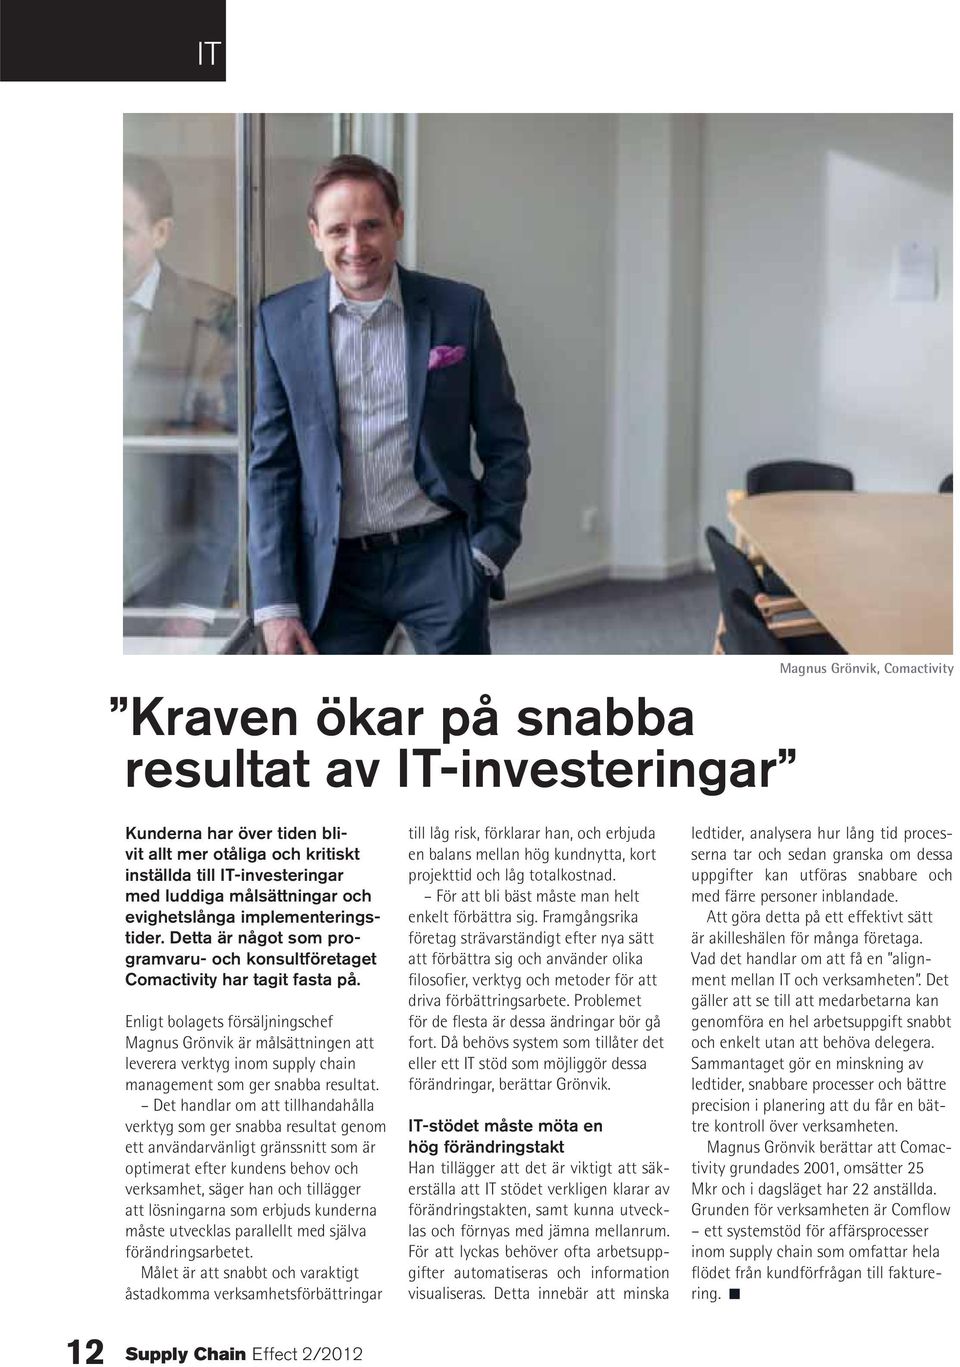 Enligt bolagets försäljningschef Magnus Grönvik är målsättningen att leverera verktyg inom supply chain management som ger snabba resultat.